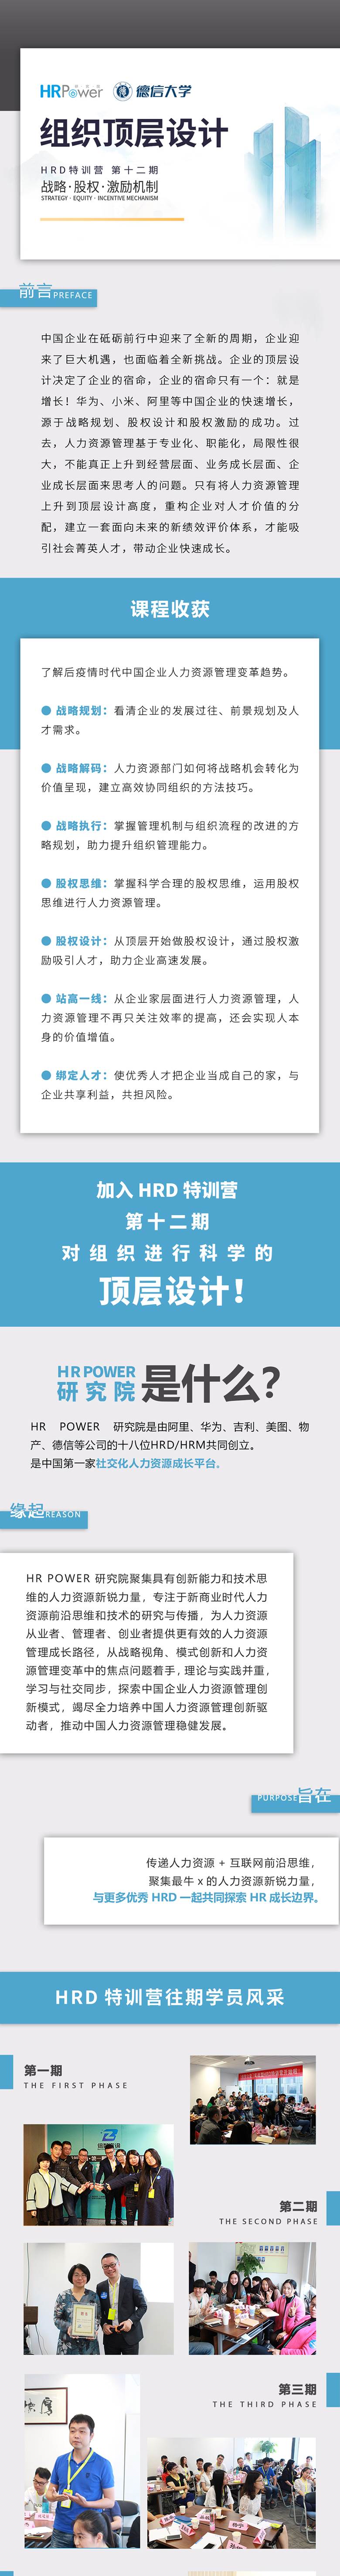 十二期HRD学员招募长图_01.jpg